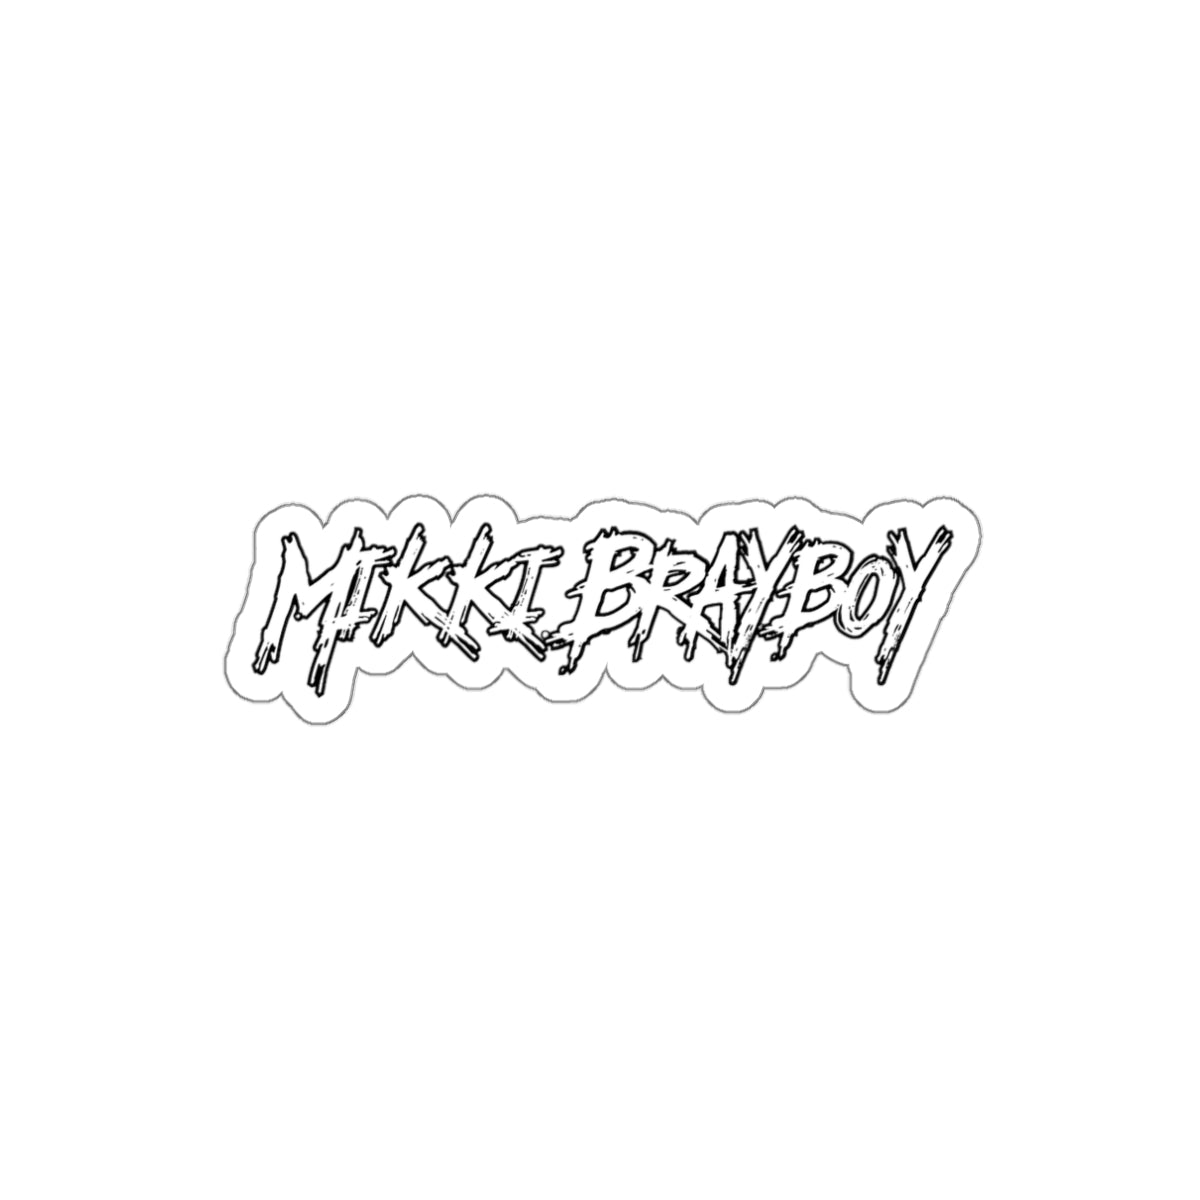 Mikki Brayboy Cut-out Sticker